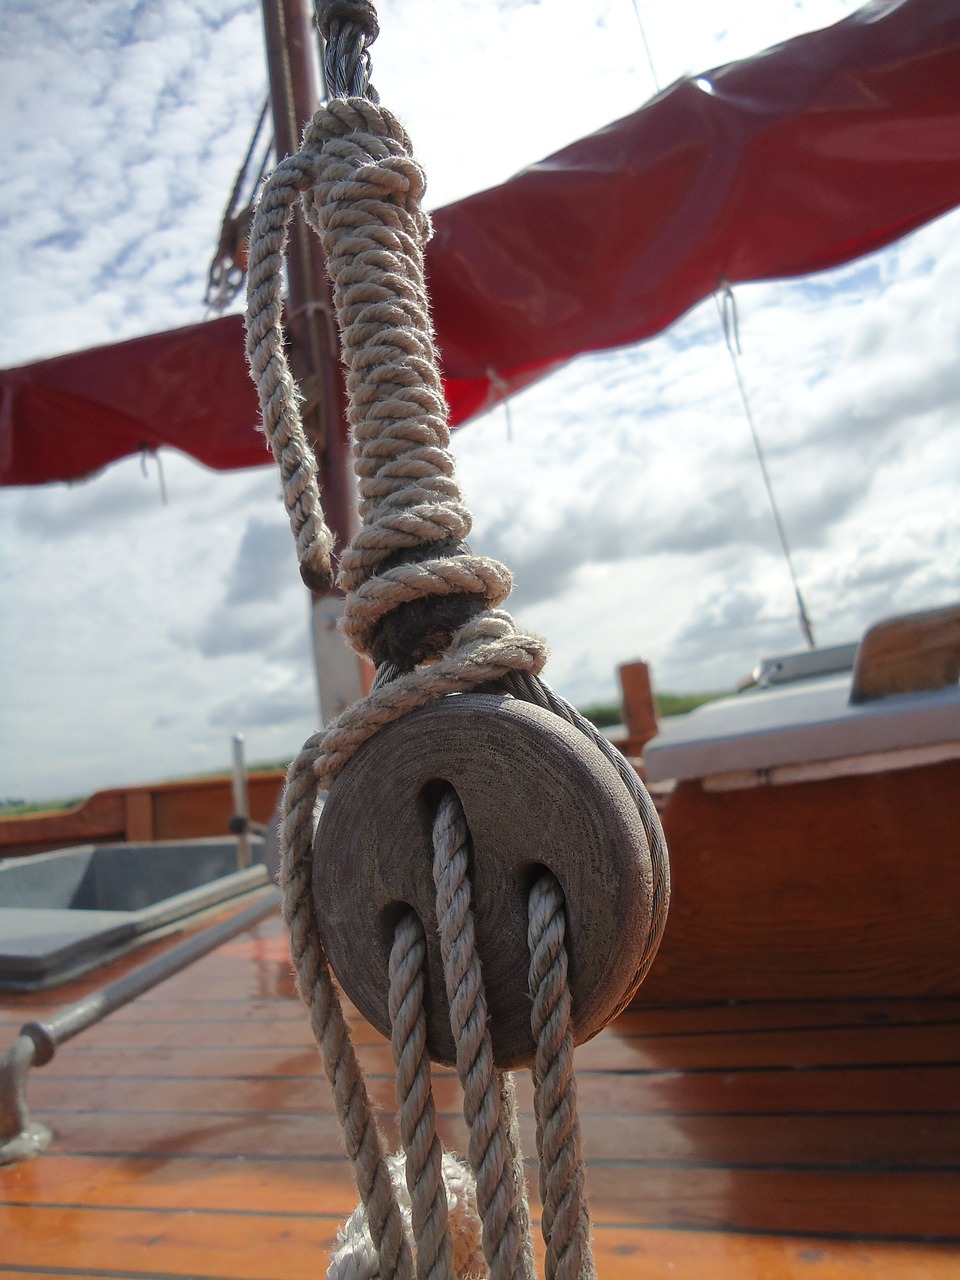 rigging sail sailing boat free photo